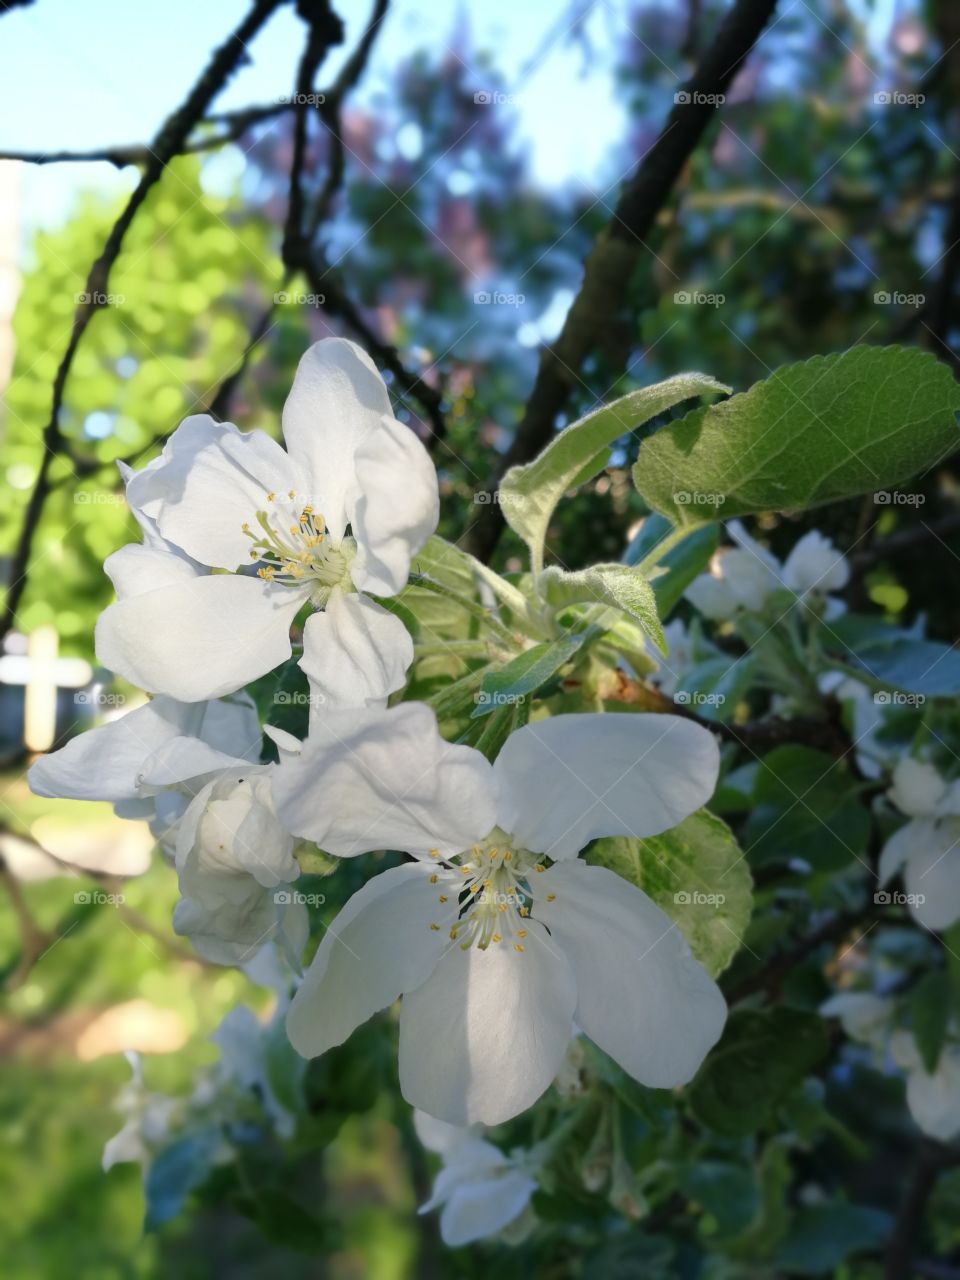 Apple tree trees bloom green leaves spring krone